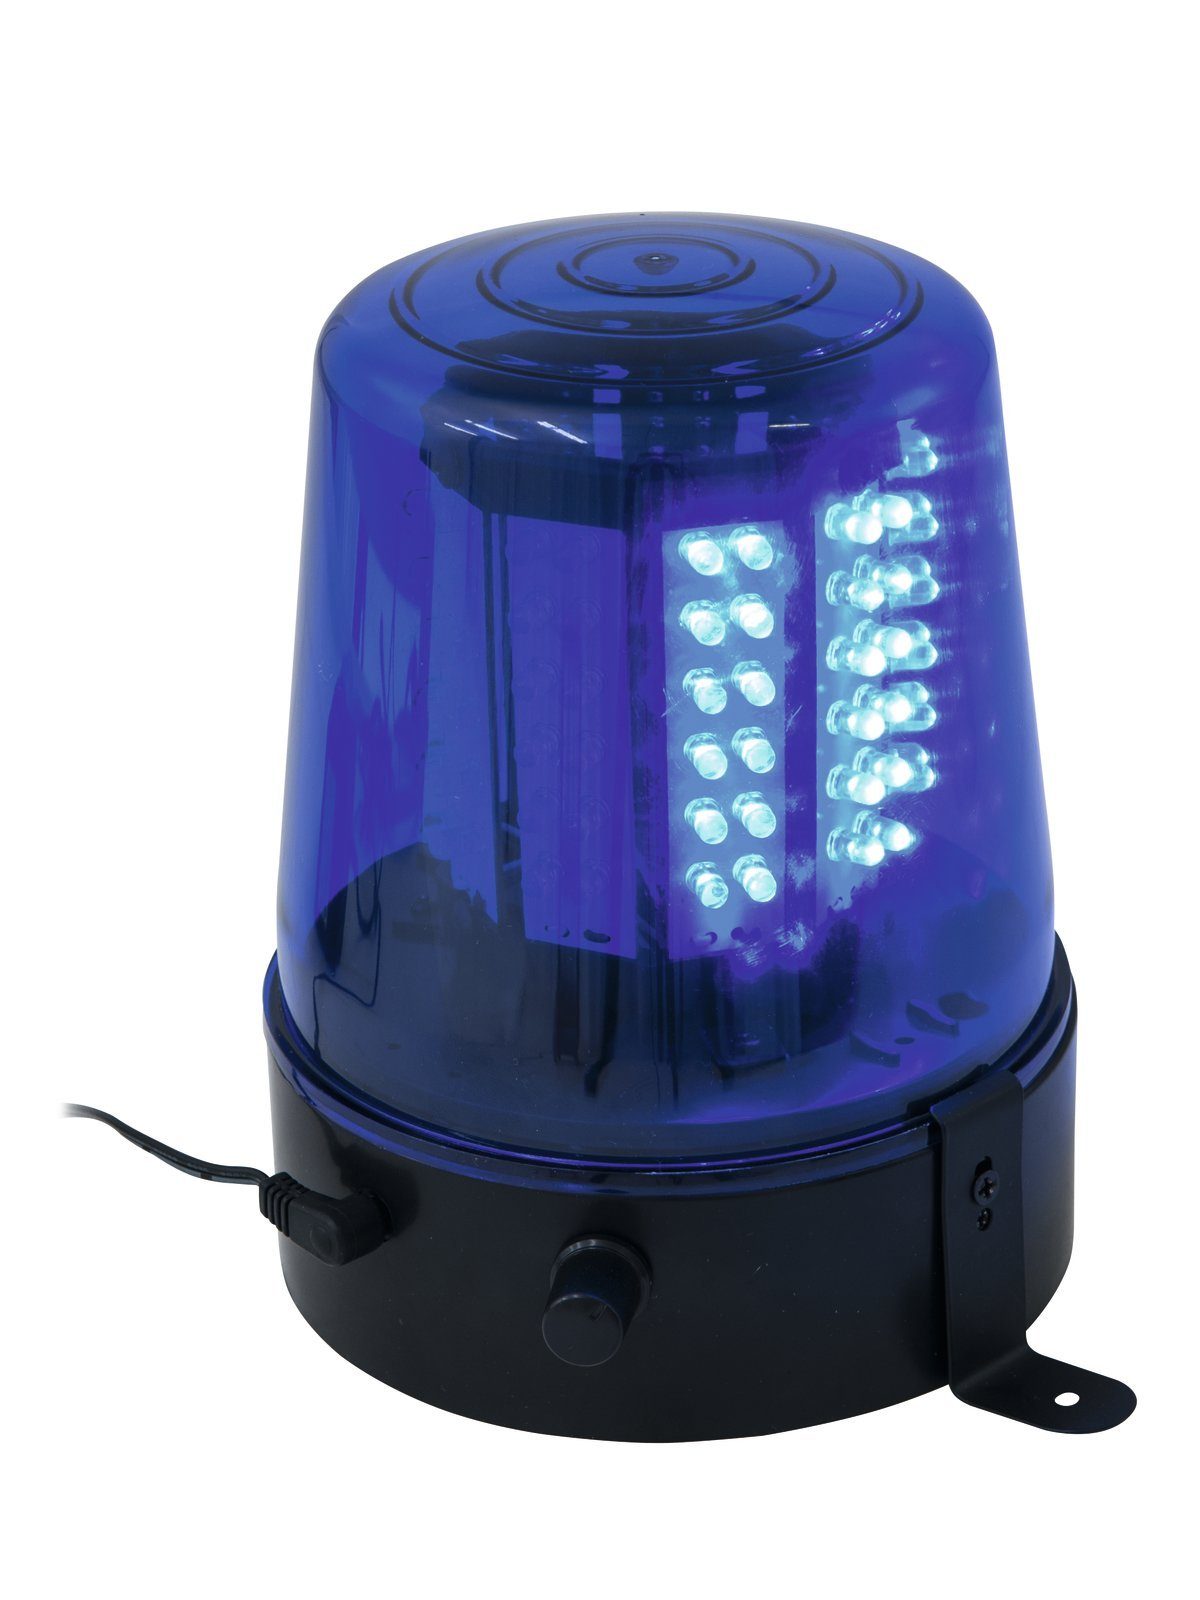 Am besten EUROLITE Discolicht Polizeilicht Feuerwehrlicht 108 LED regelbar LED Netzteil BLAU inkl. 